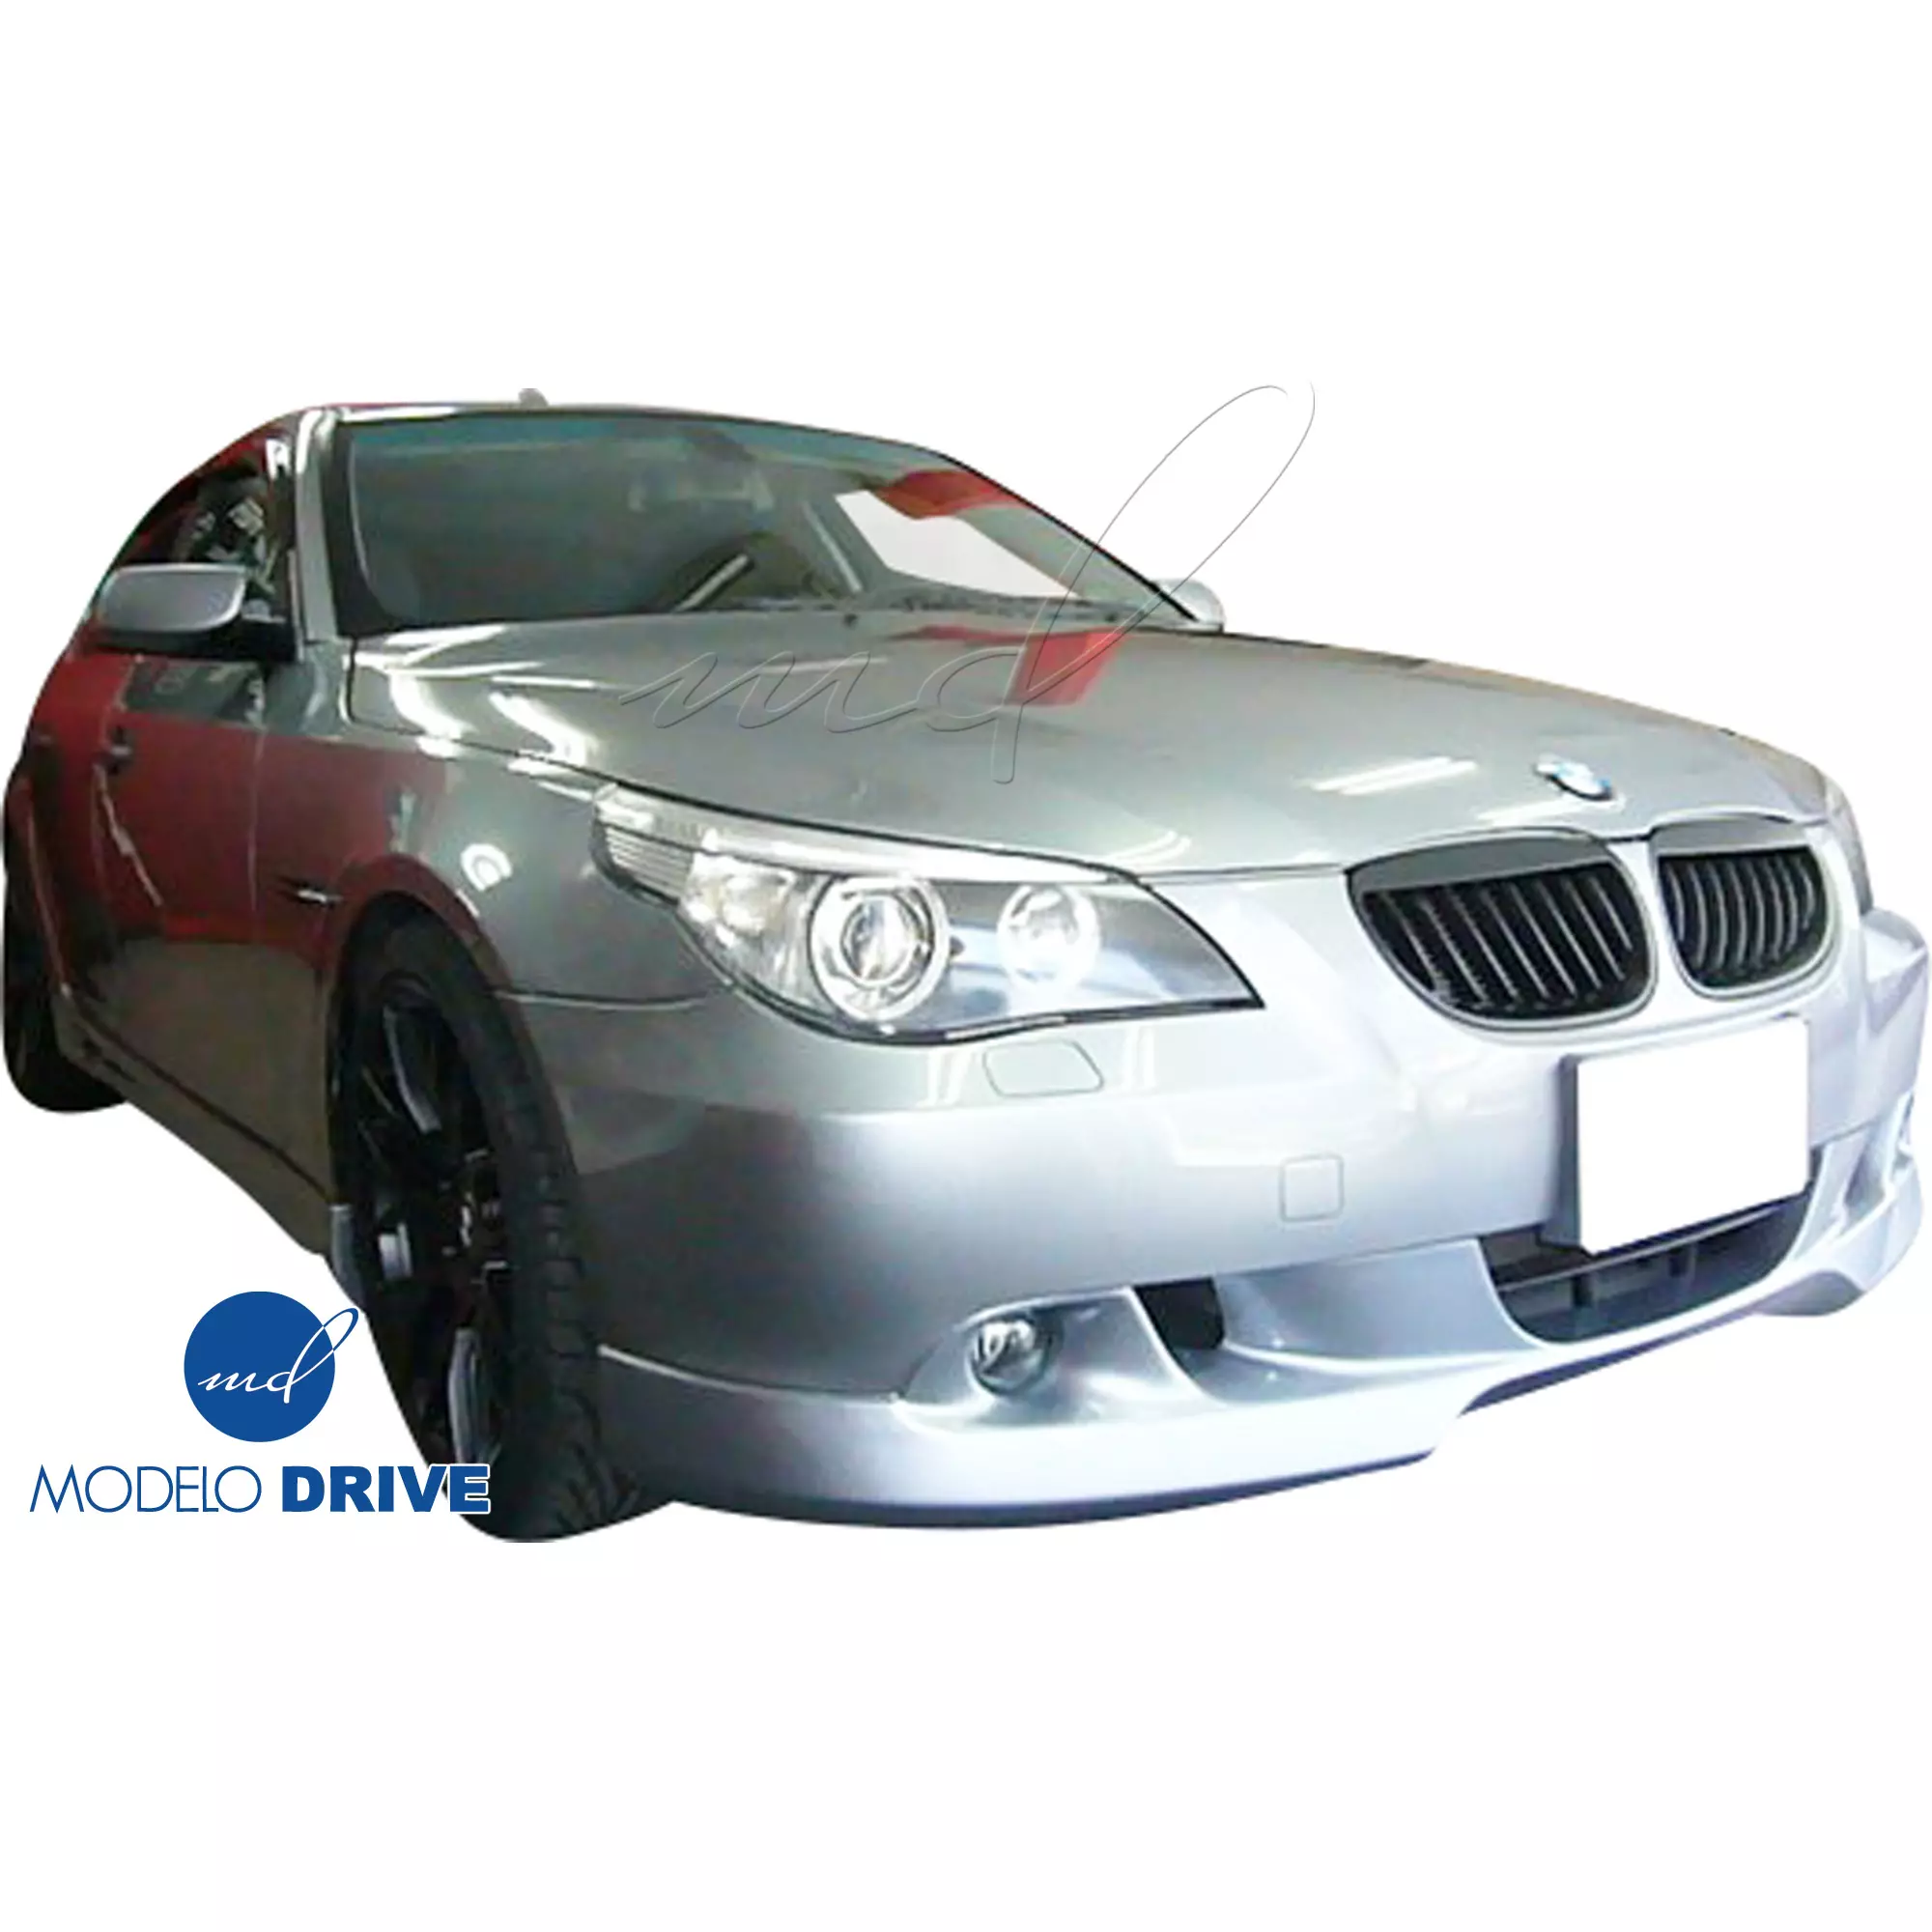 ModeloDrive FRP ASCH Body Kit 4pc > BMW 5-Series E60 2004-2010 > 4dr - Image 6